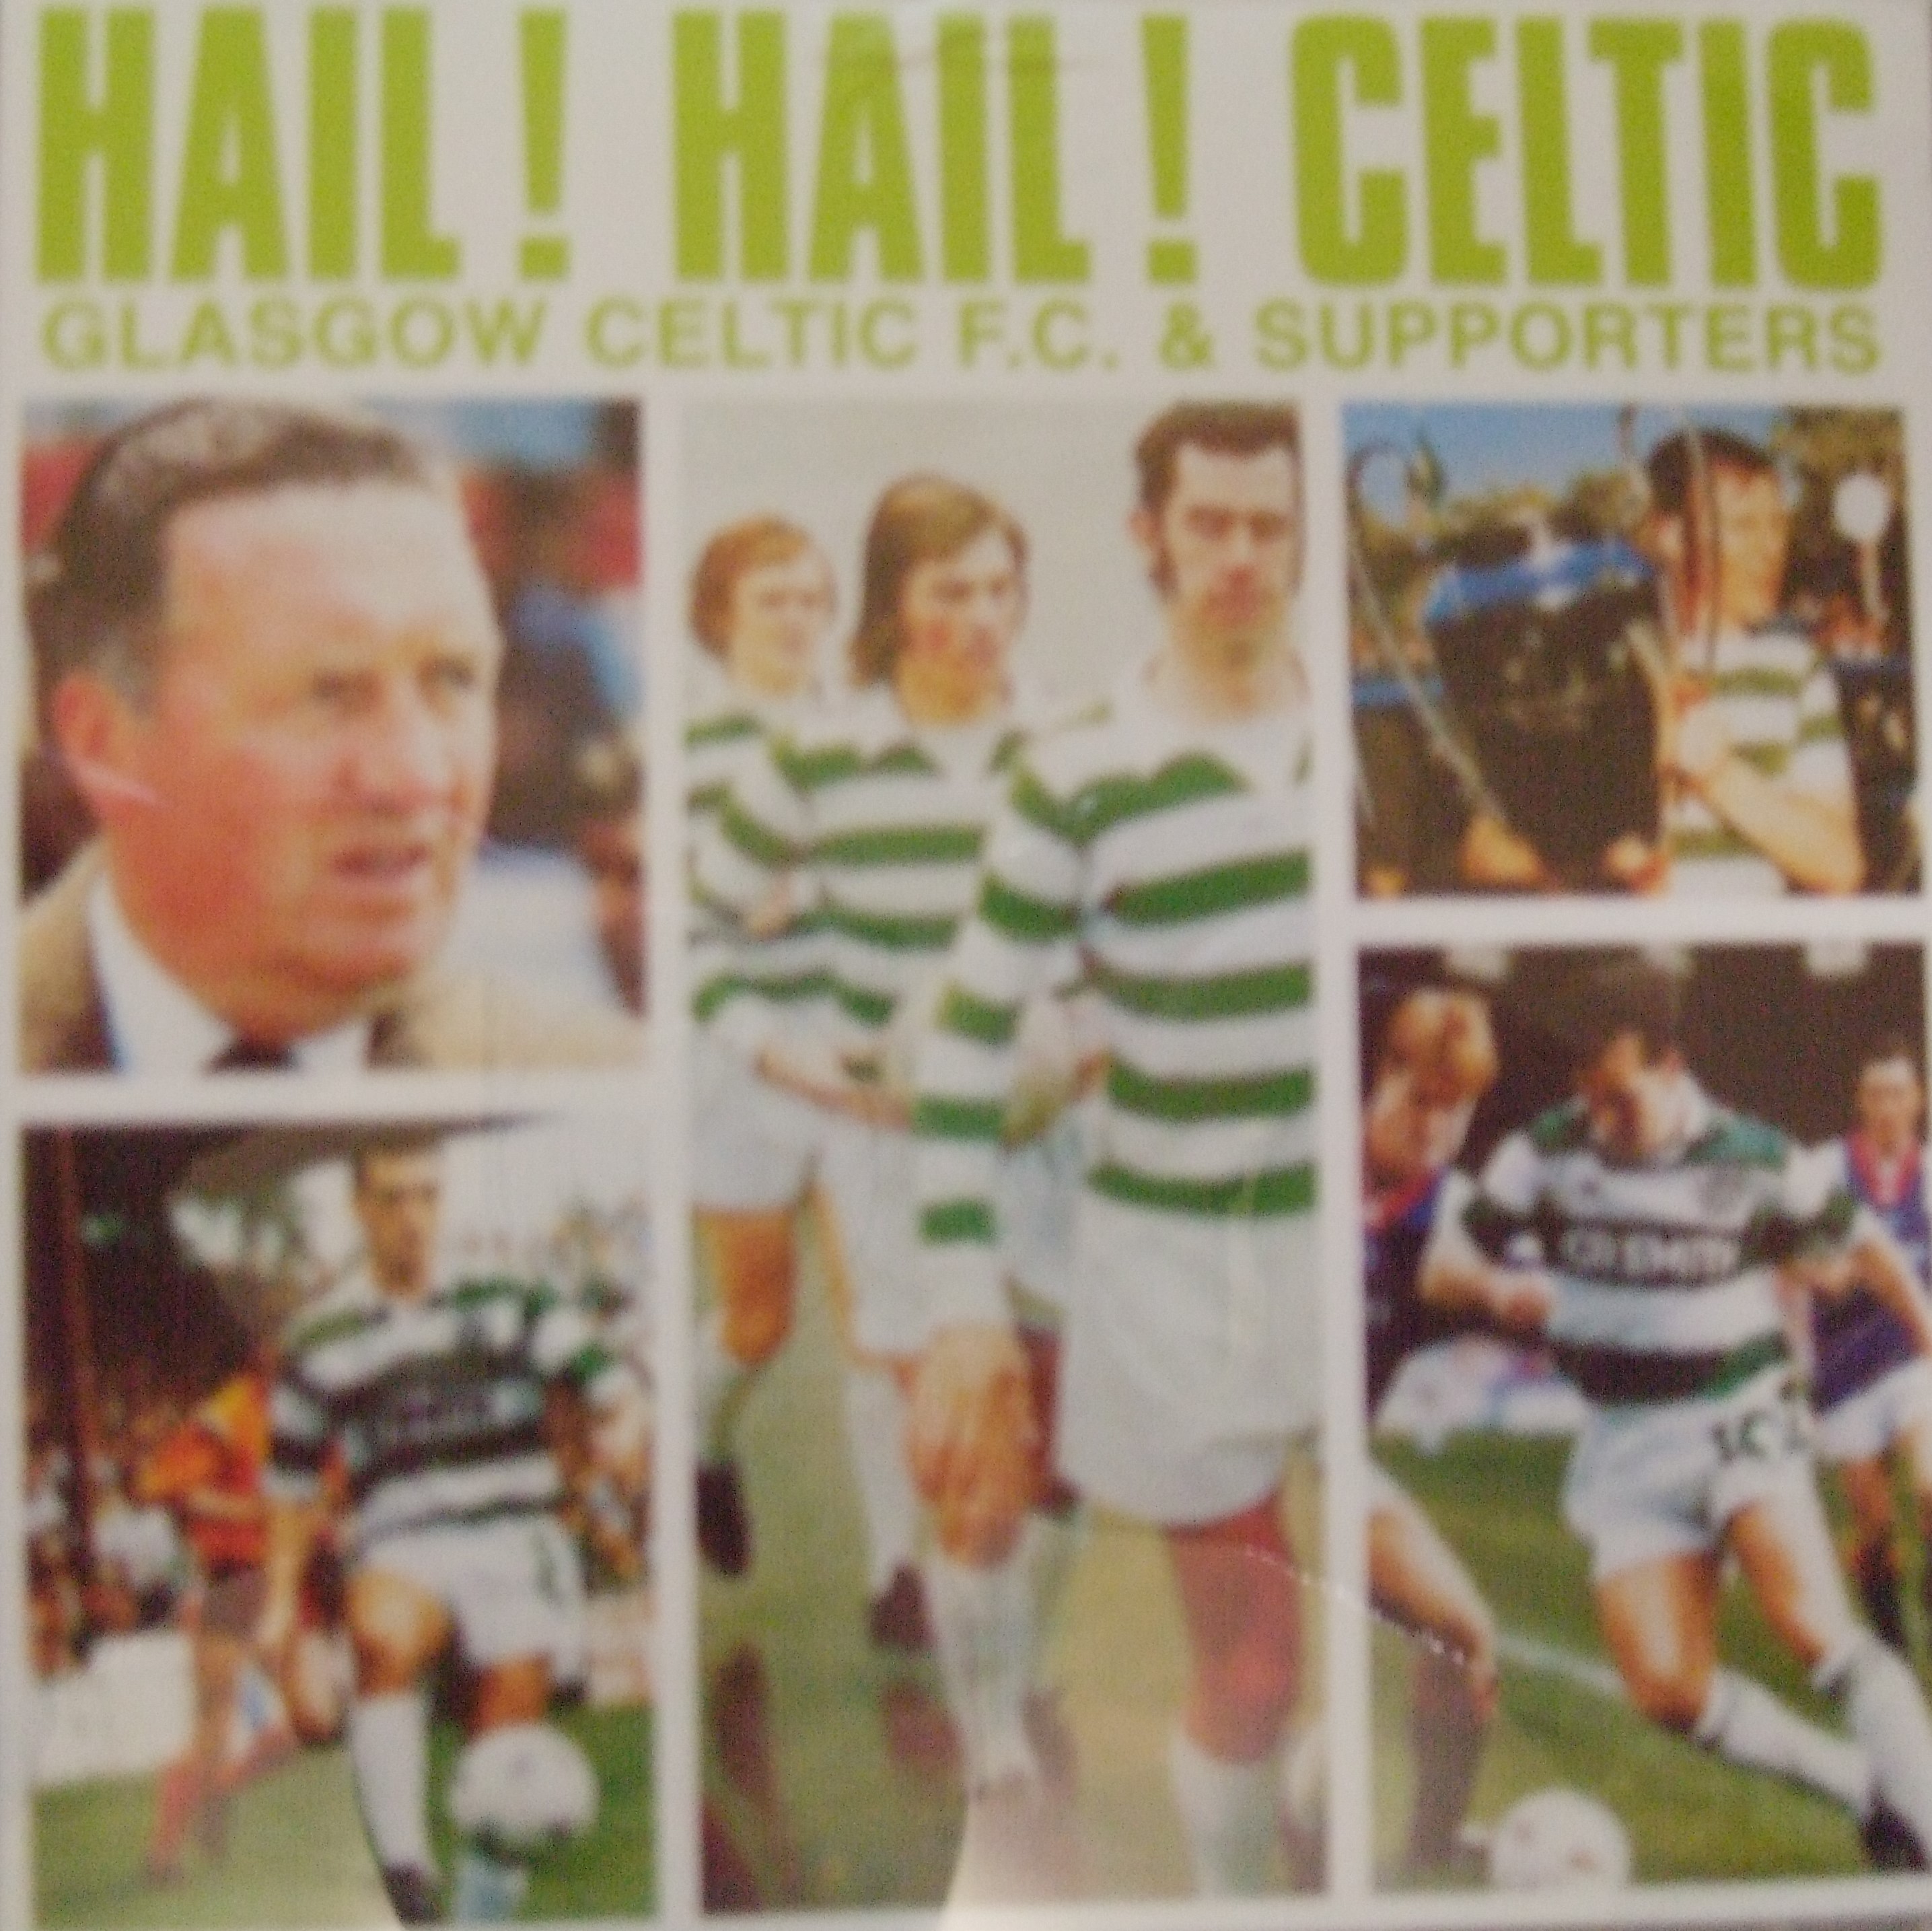 Sports Goods Mania 現地入手 中古 美品 スコットランド プレミアリーグ セルティックｆｃ サポーターズソング Hail Hail Celtic ｃｄアルバム